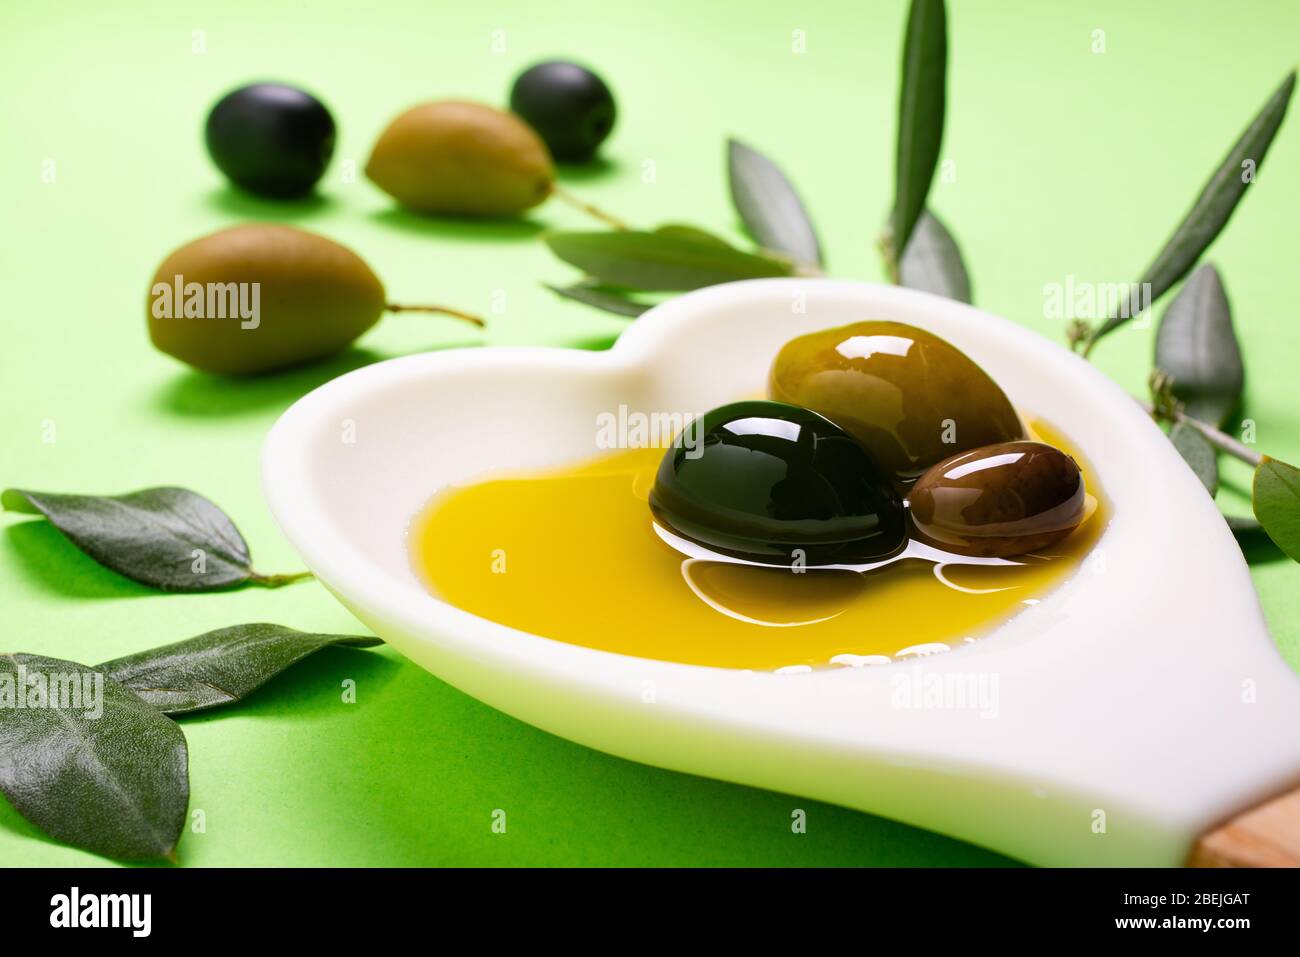 in primo piano, nel cucchiaio bianco a forma di cuore alcune olive con olio extra vergine di oliva Foto Stock